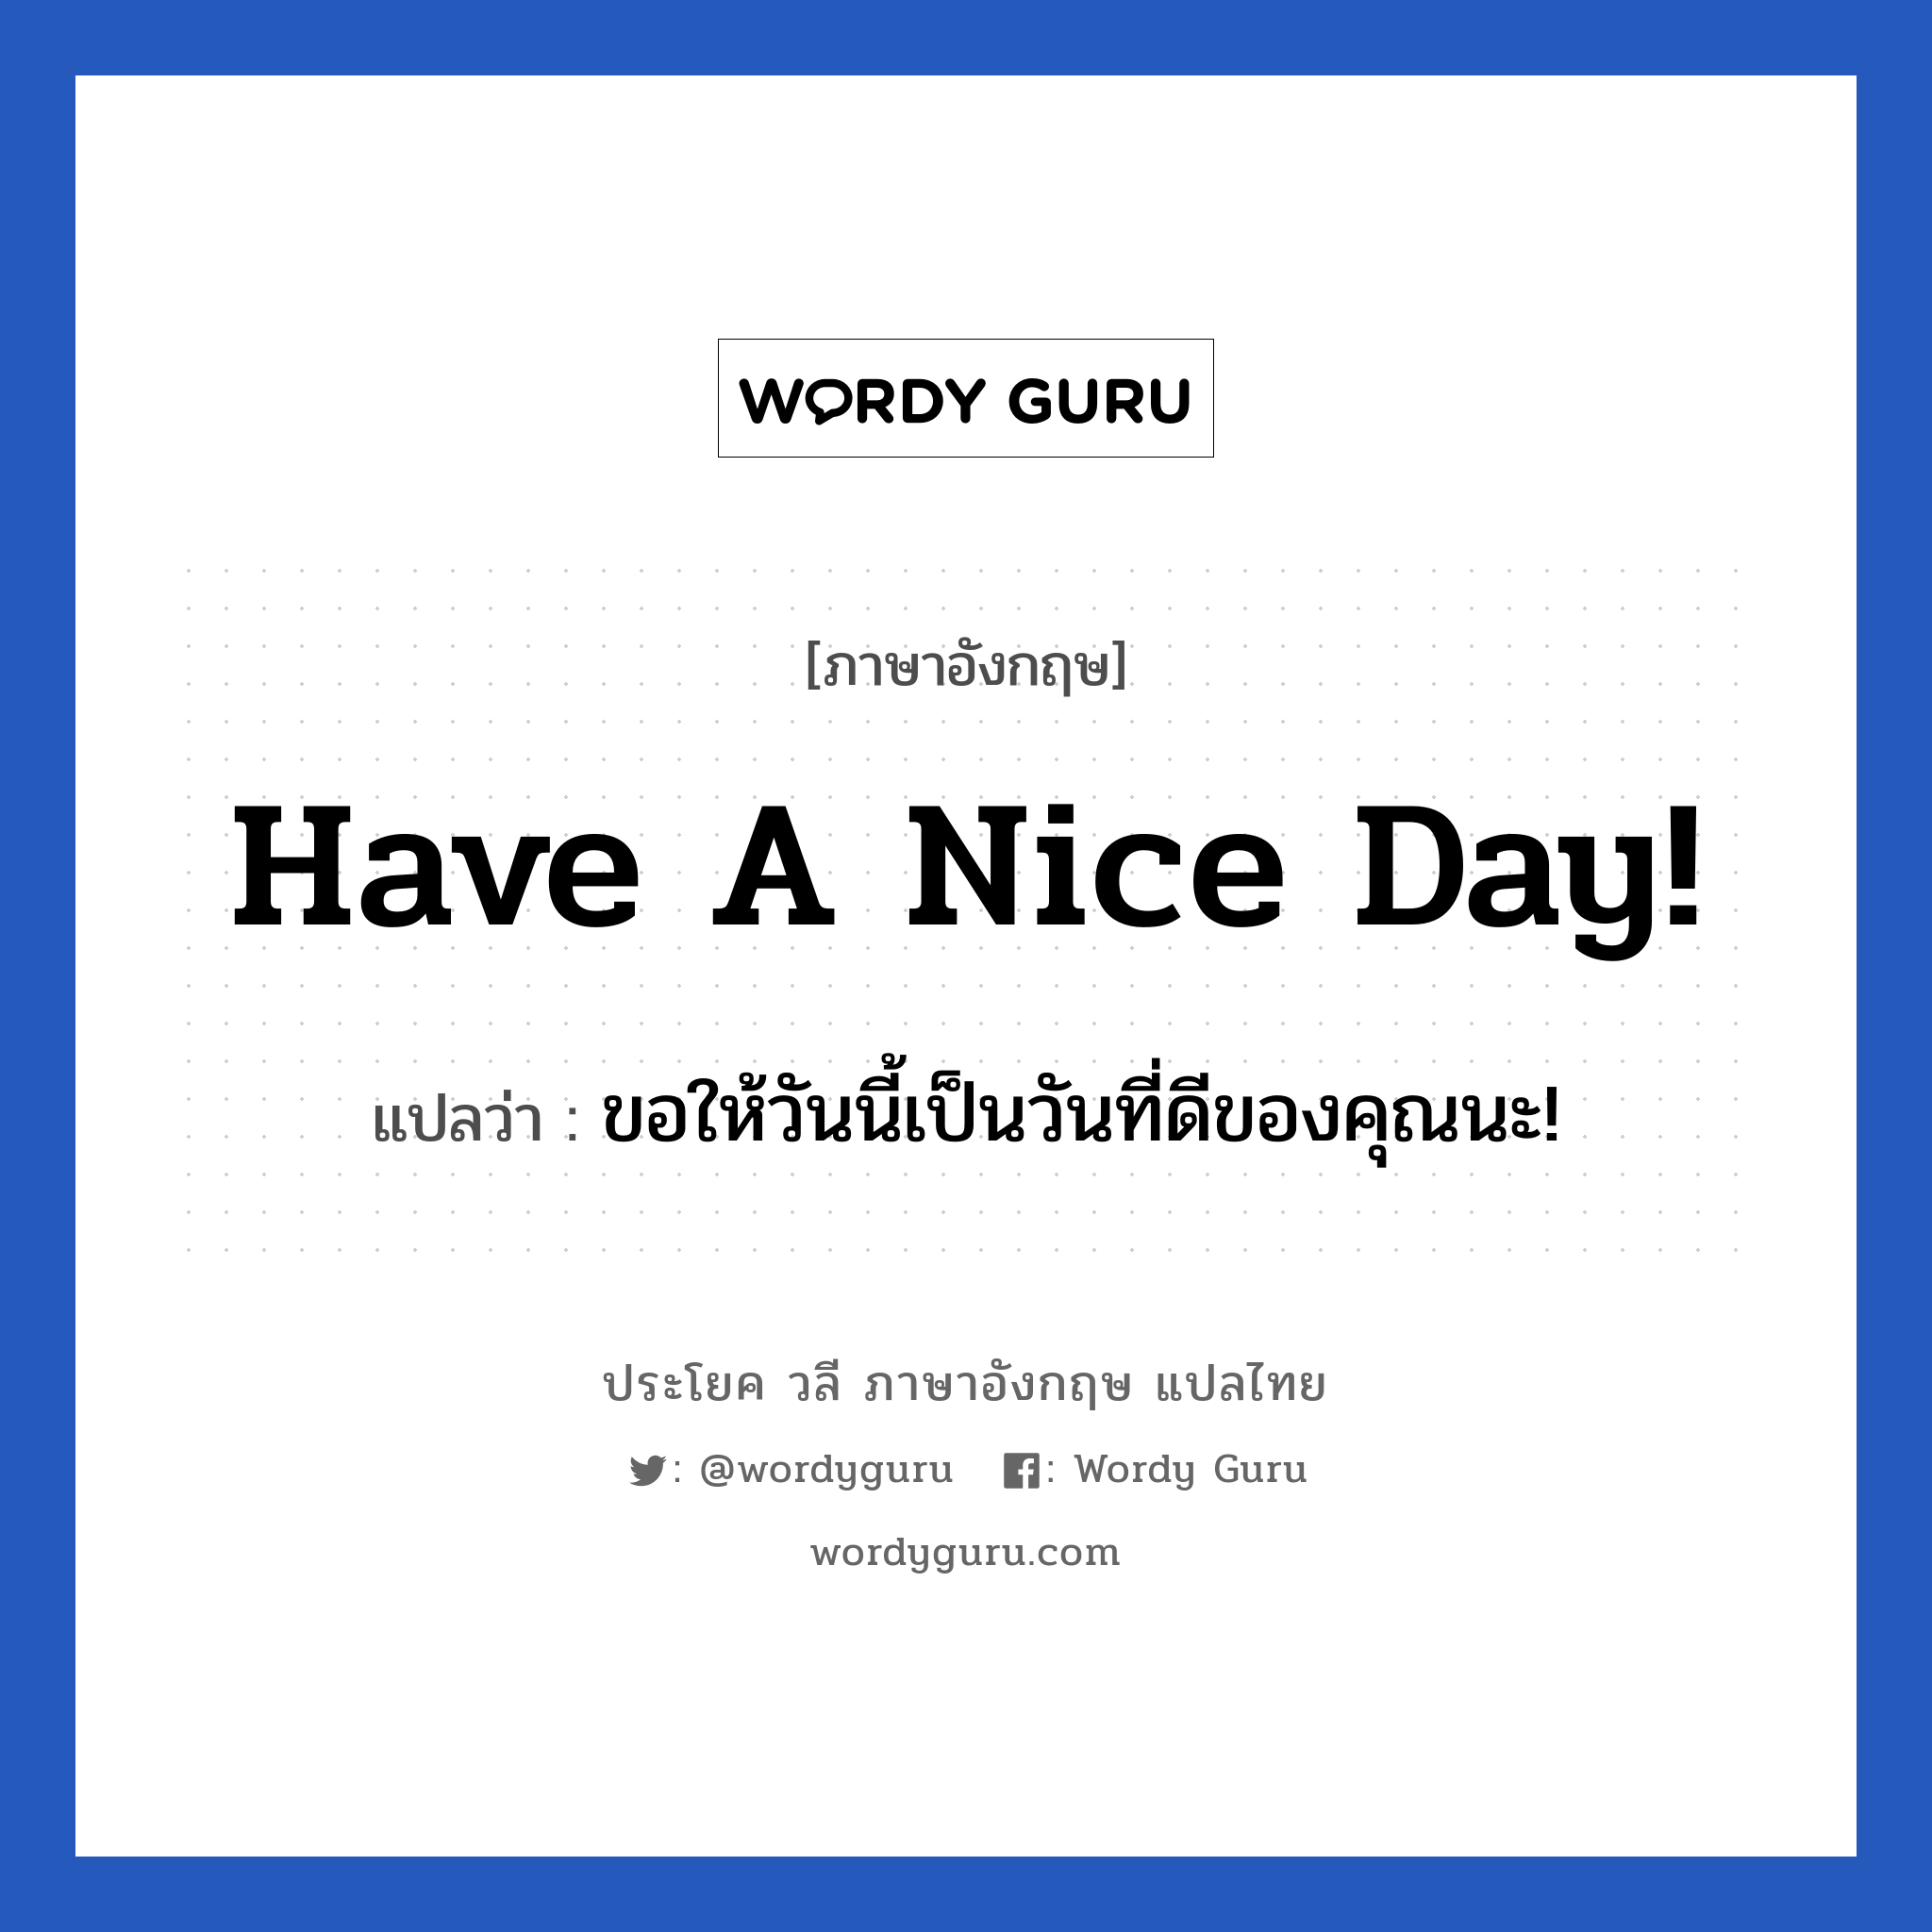 ขอให้วันนี้เป็นวันที่ดีของคุณนะ! ภาษาอังกฤษ?, วลีภาษาอังกฤษ ขอให้วันนี้เป็นวันที่ดีของคุณนะ! แปลว่า Have a nice day!